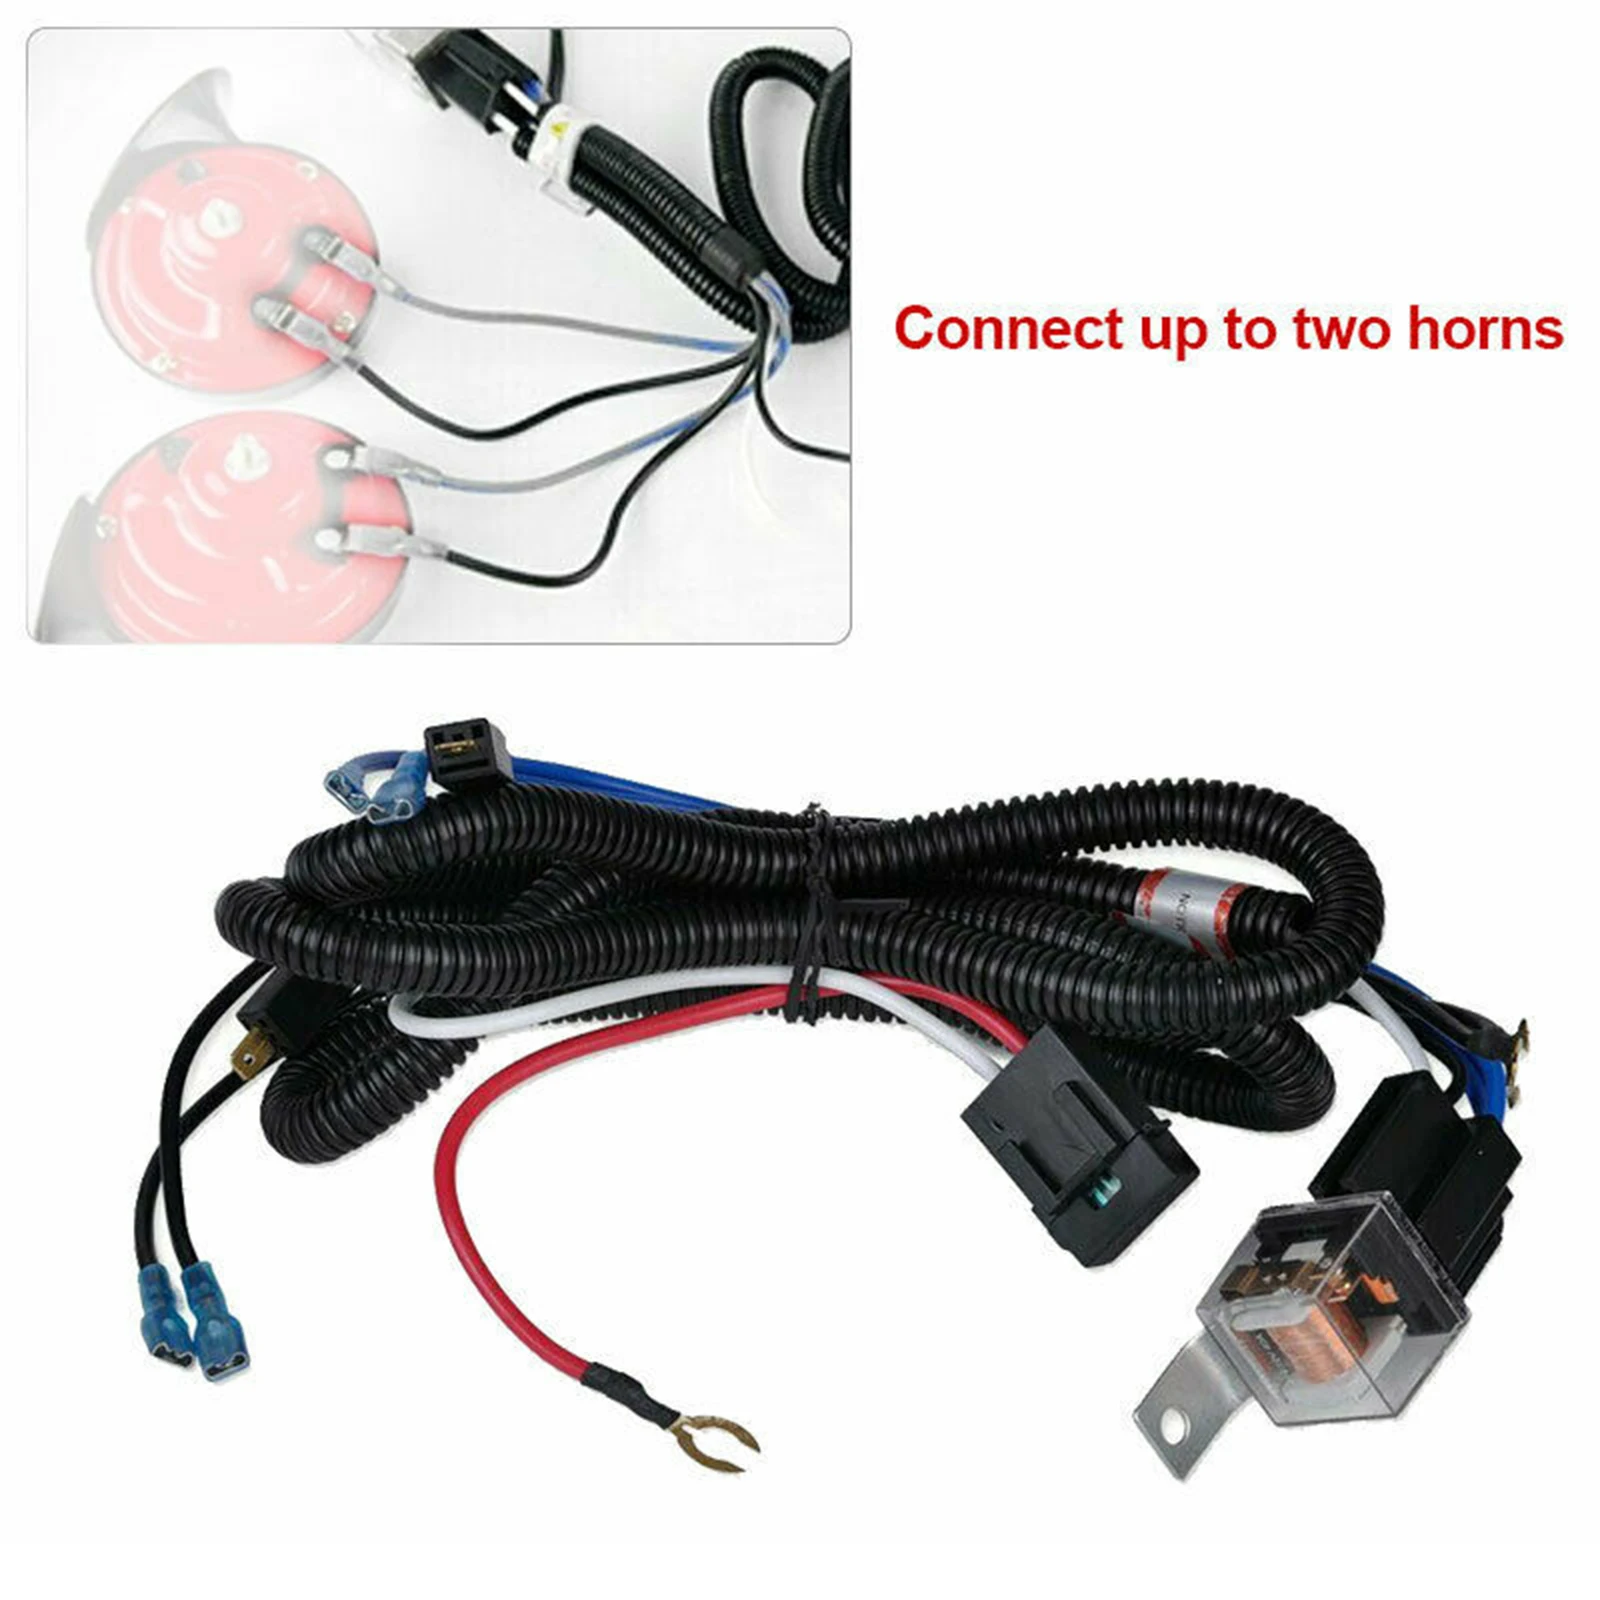 12V/24V Horn Wiring Harness Relay Kit For Car Truck Grille Mount Blast Tone Horns